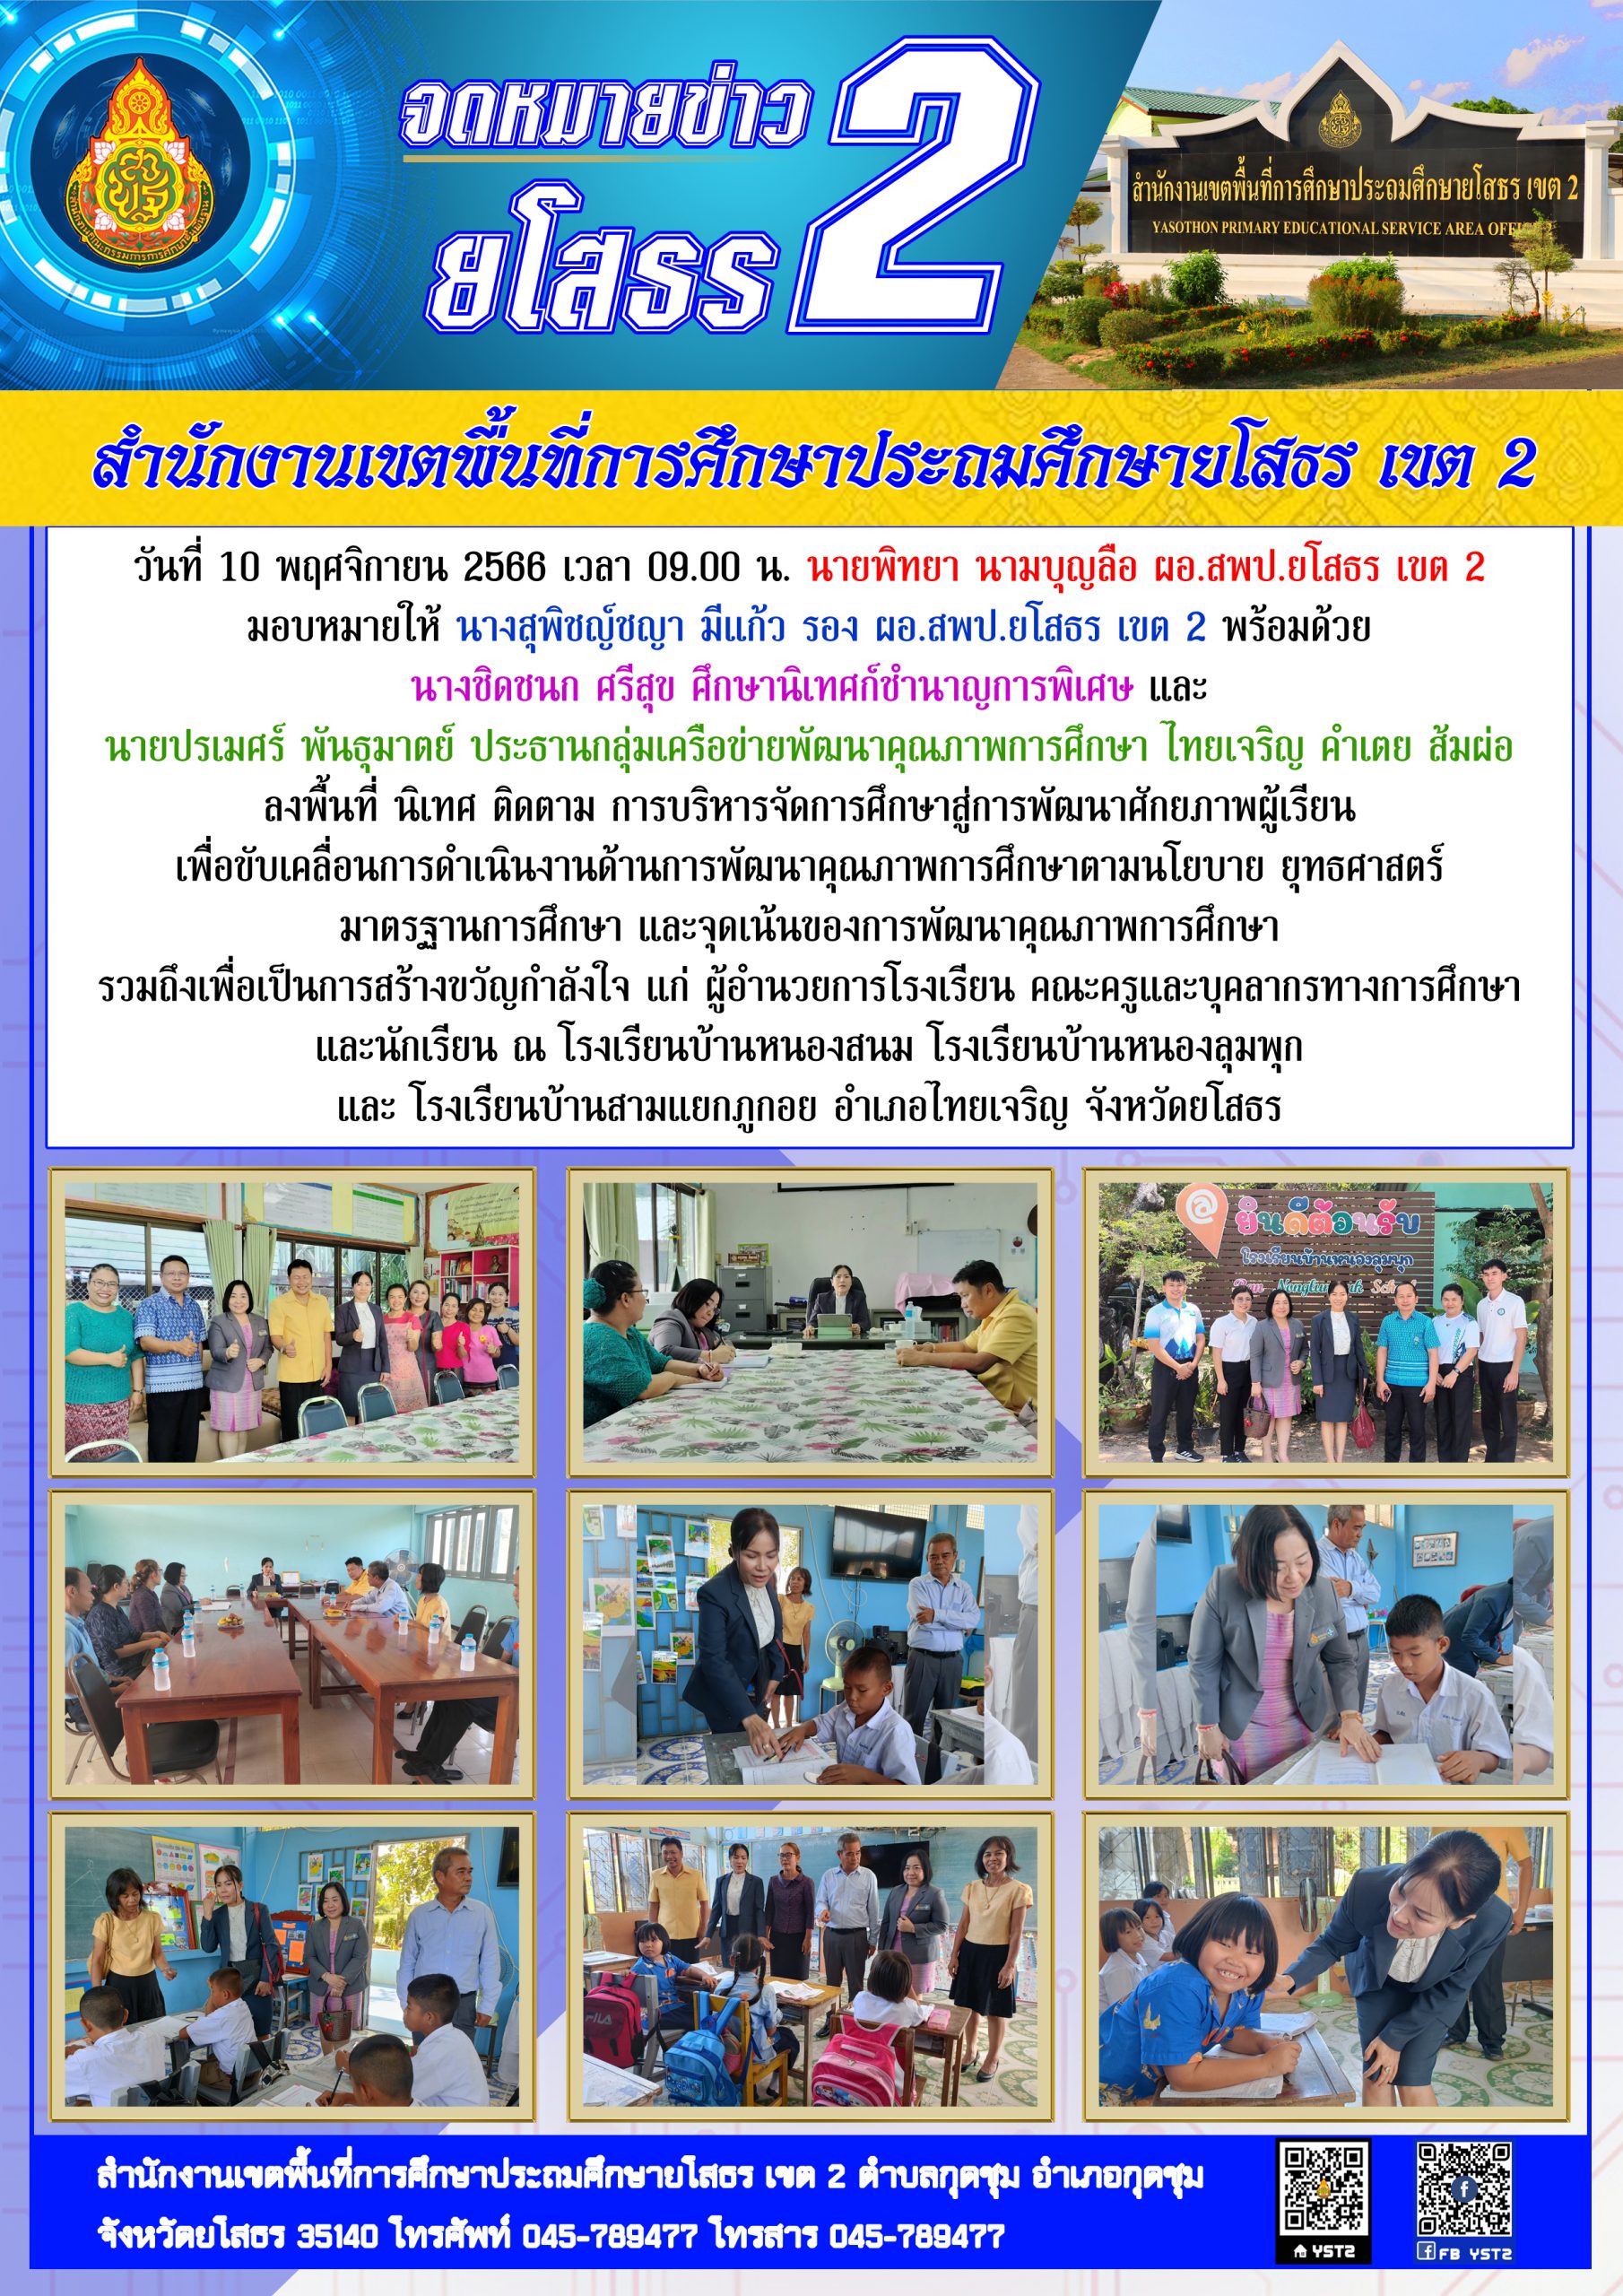 สพป.ยโสธร เขต 2 ลงพื้นที่ นิเทศ ติดตาม การบริหารจัดการศึกษาสู่การพัฒนาศักยภาพผู้เรียน ณ อำเภอไทยเจริญ จังหวัดยโสธร